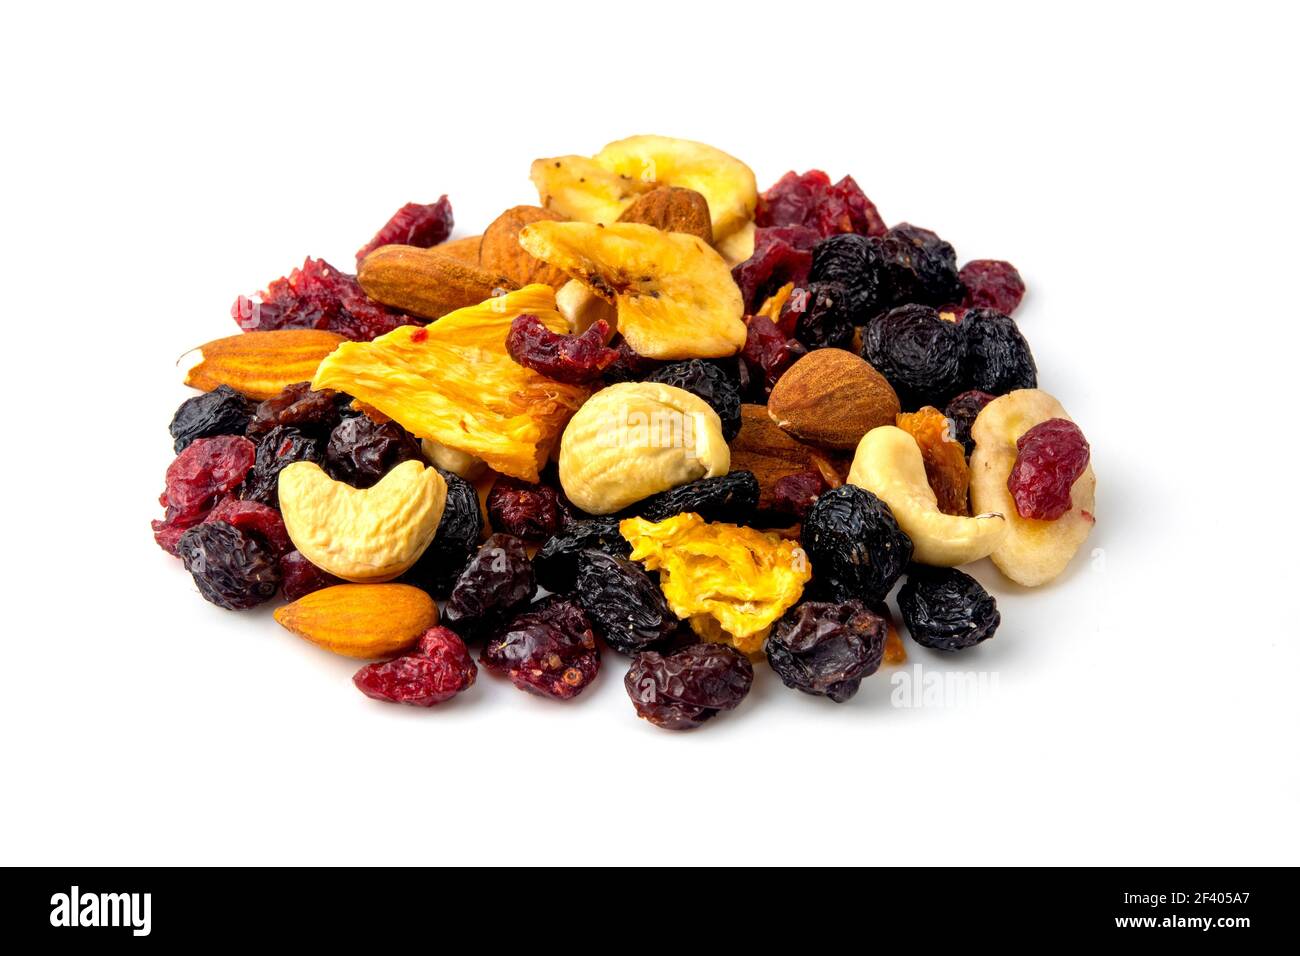 Trail mix con frutta secca, noci e uvetta su sfondo bianco Foto Stock